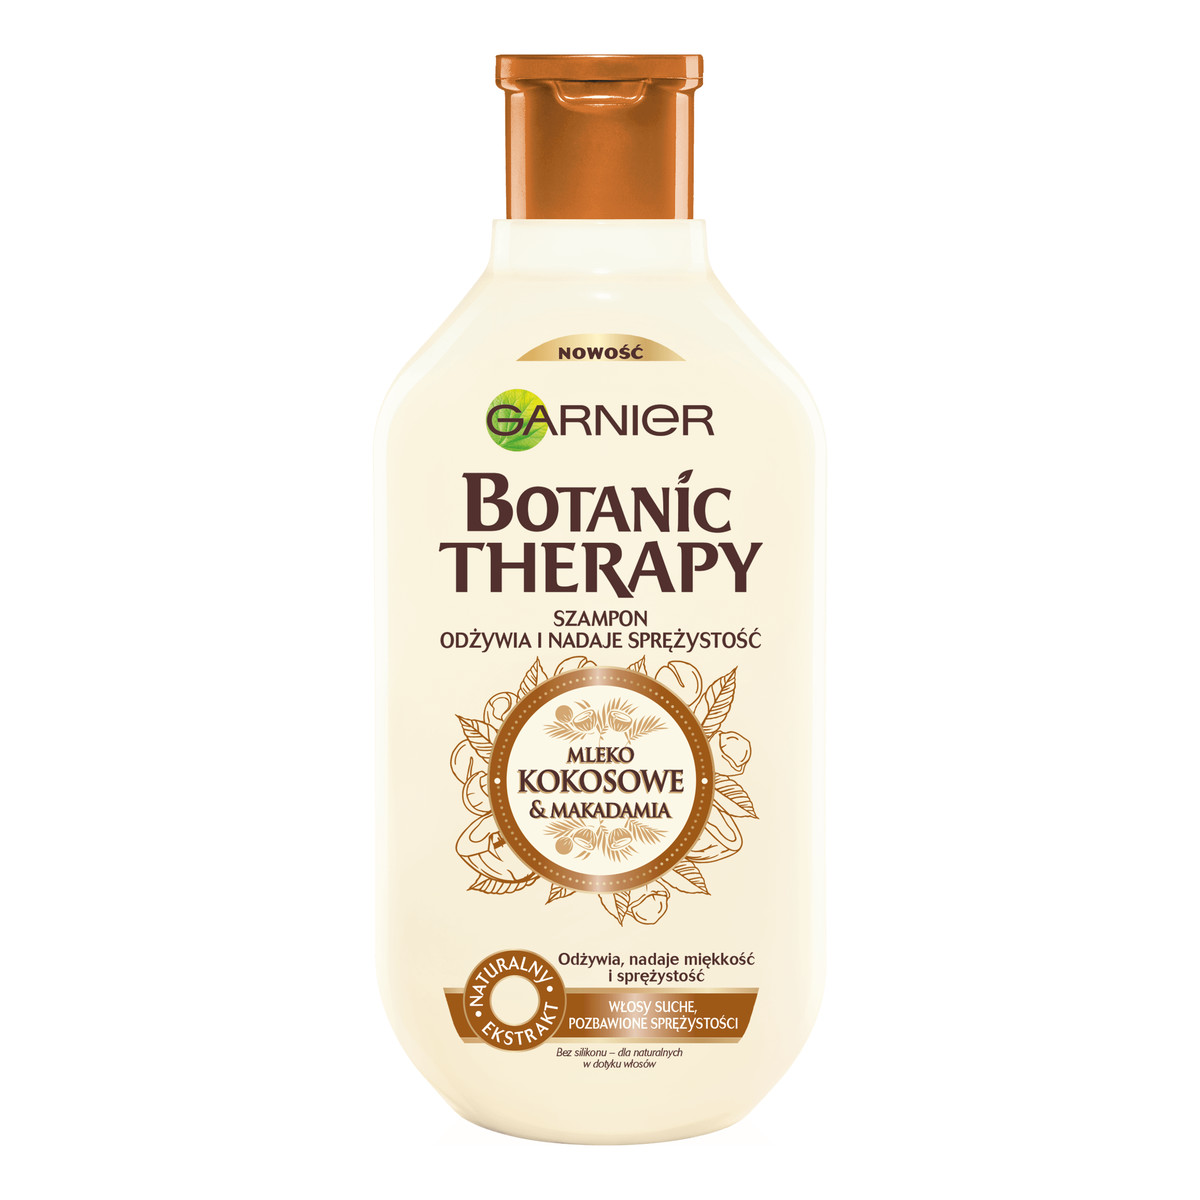 Garnier Botanic Therapy Mleko kokosowe & Makadamia szampon do włosów suchych, szorstkich i pozbawionych sprężystości 250ml